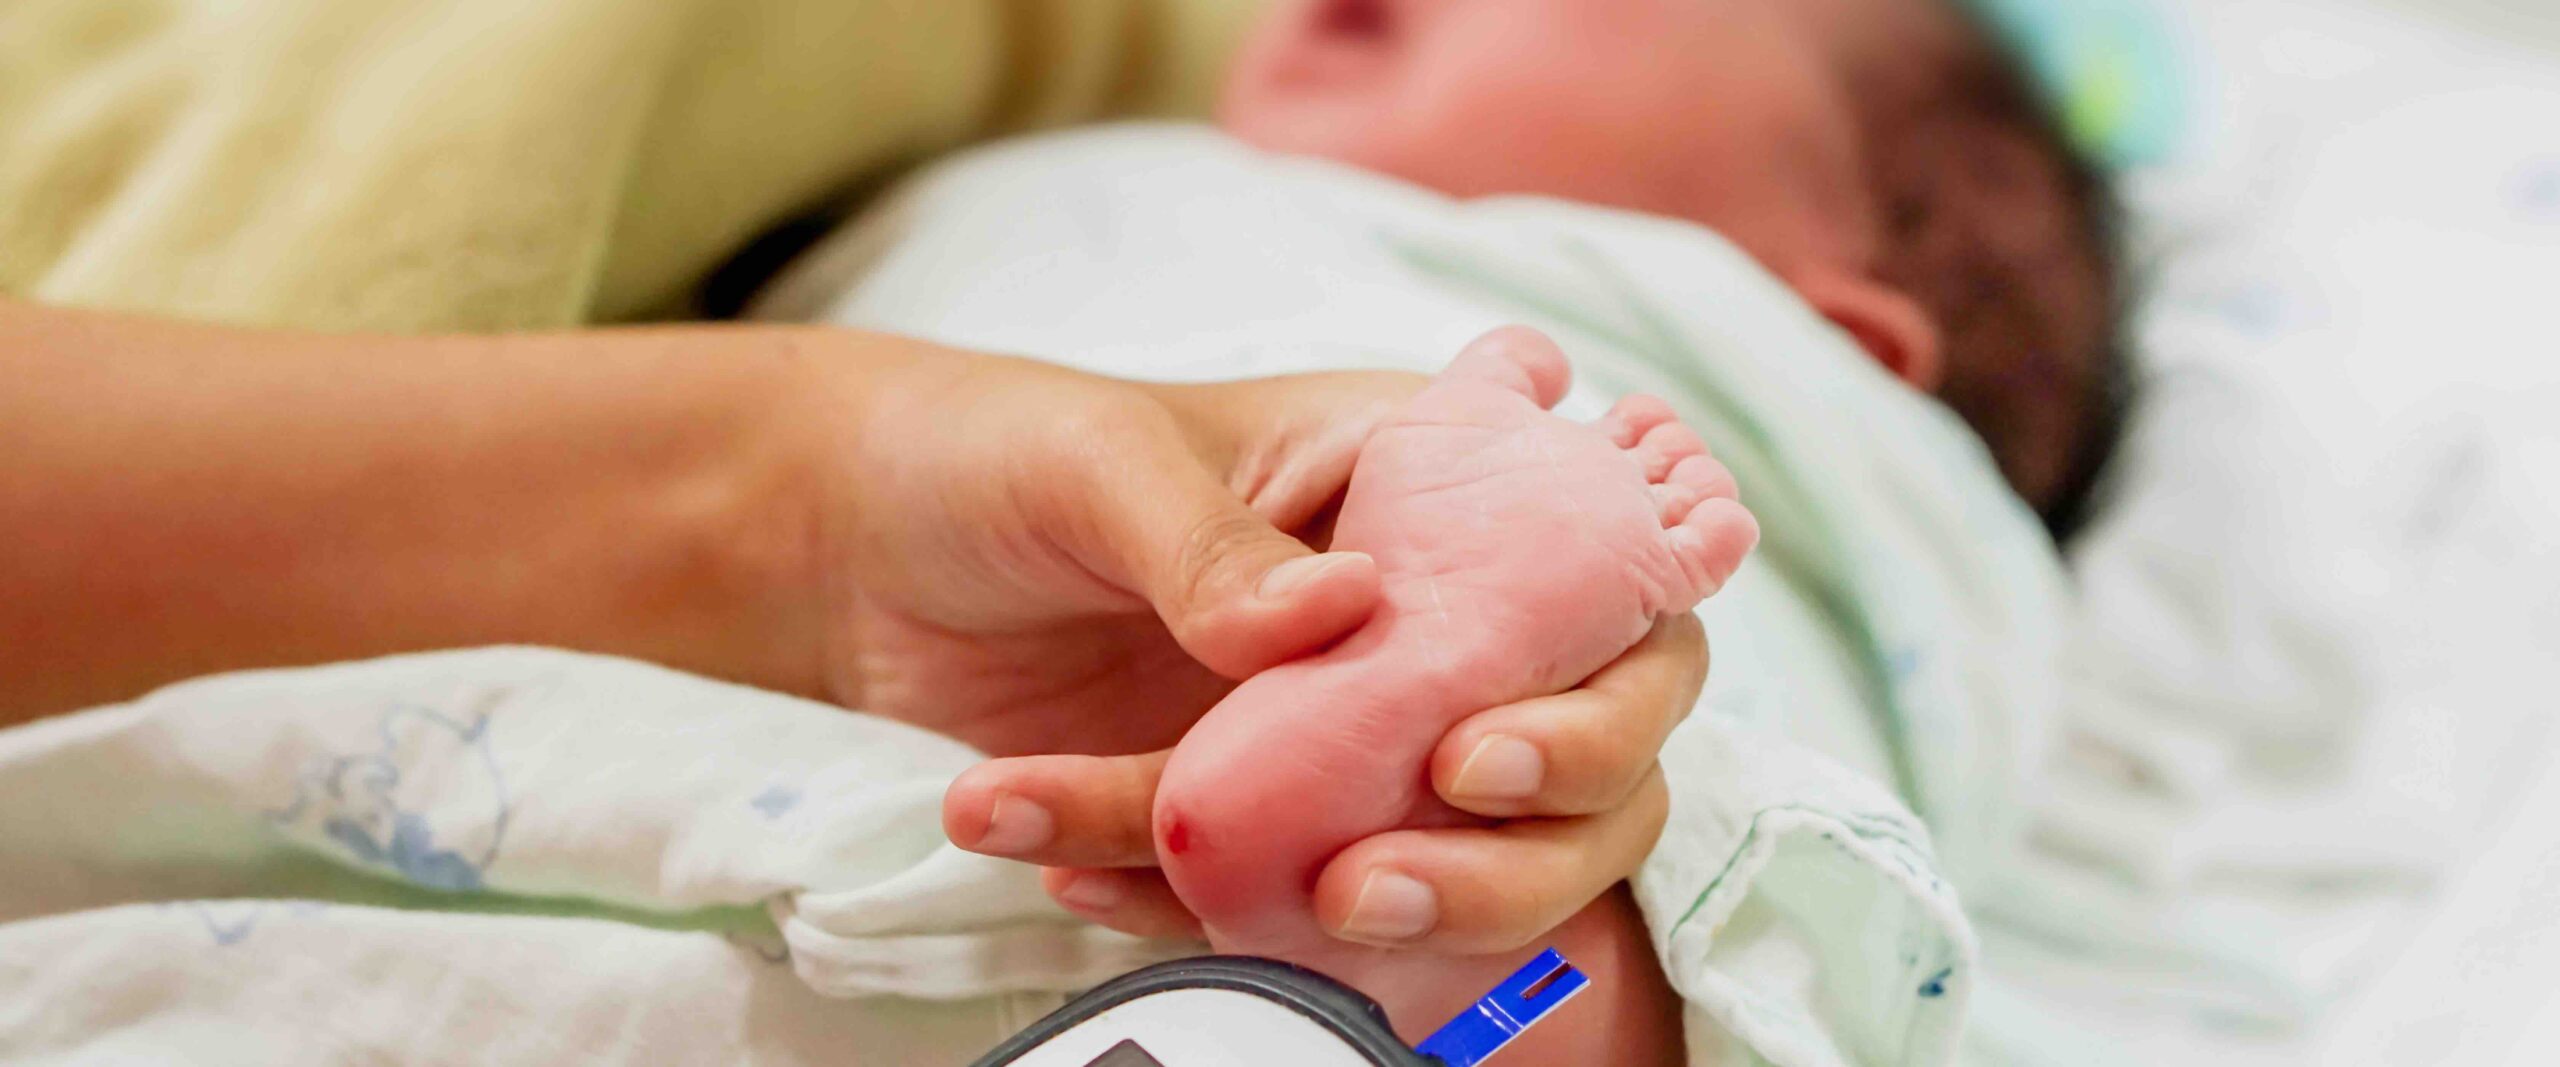 كيفية تشخيص انخفاض السكر عند الأطفال حديثي الولادة